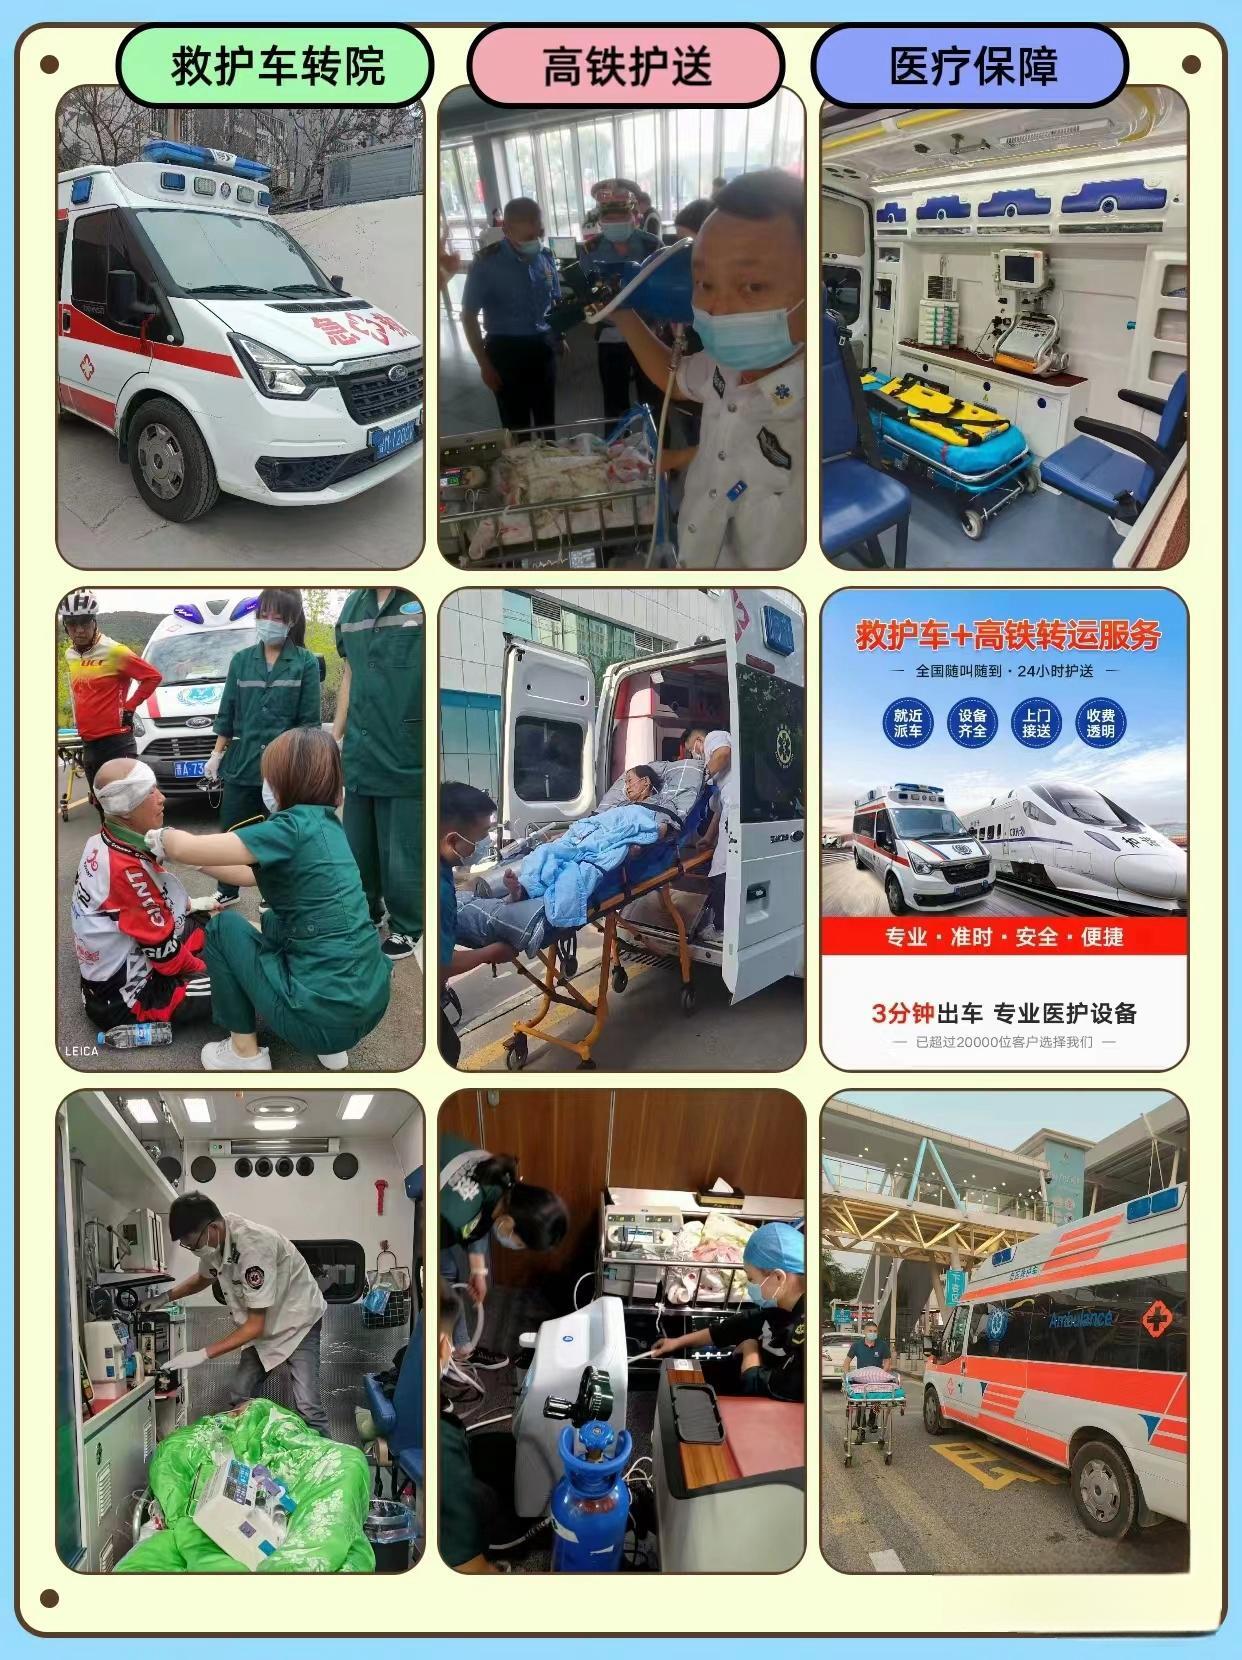 120转院救护车长途运送病人/本地救护车服务